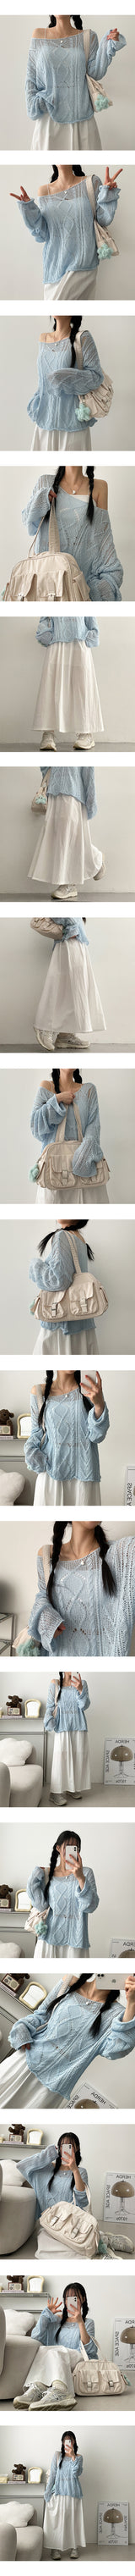 An B-Pocket Shoulder Bag